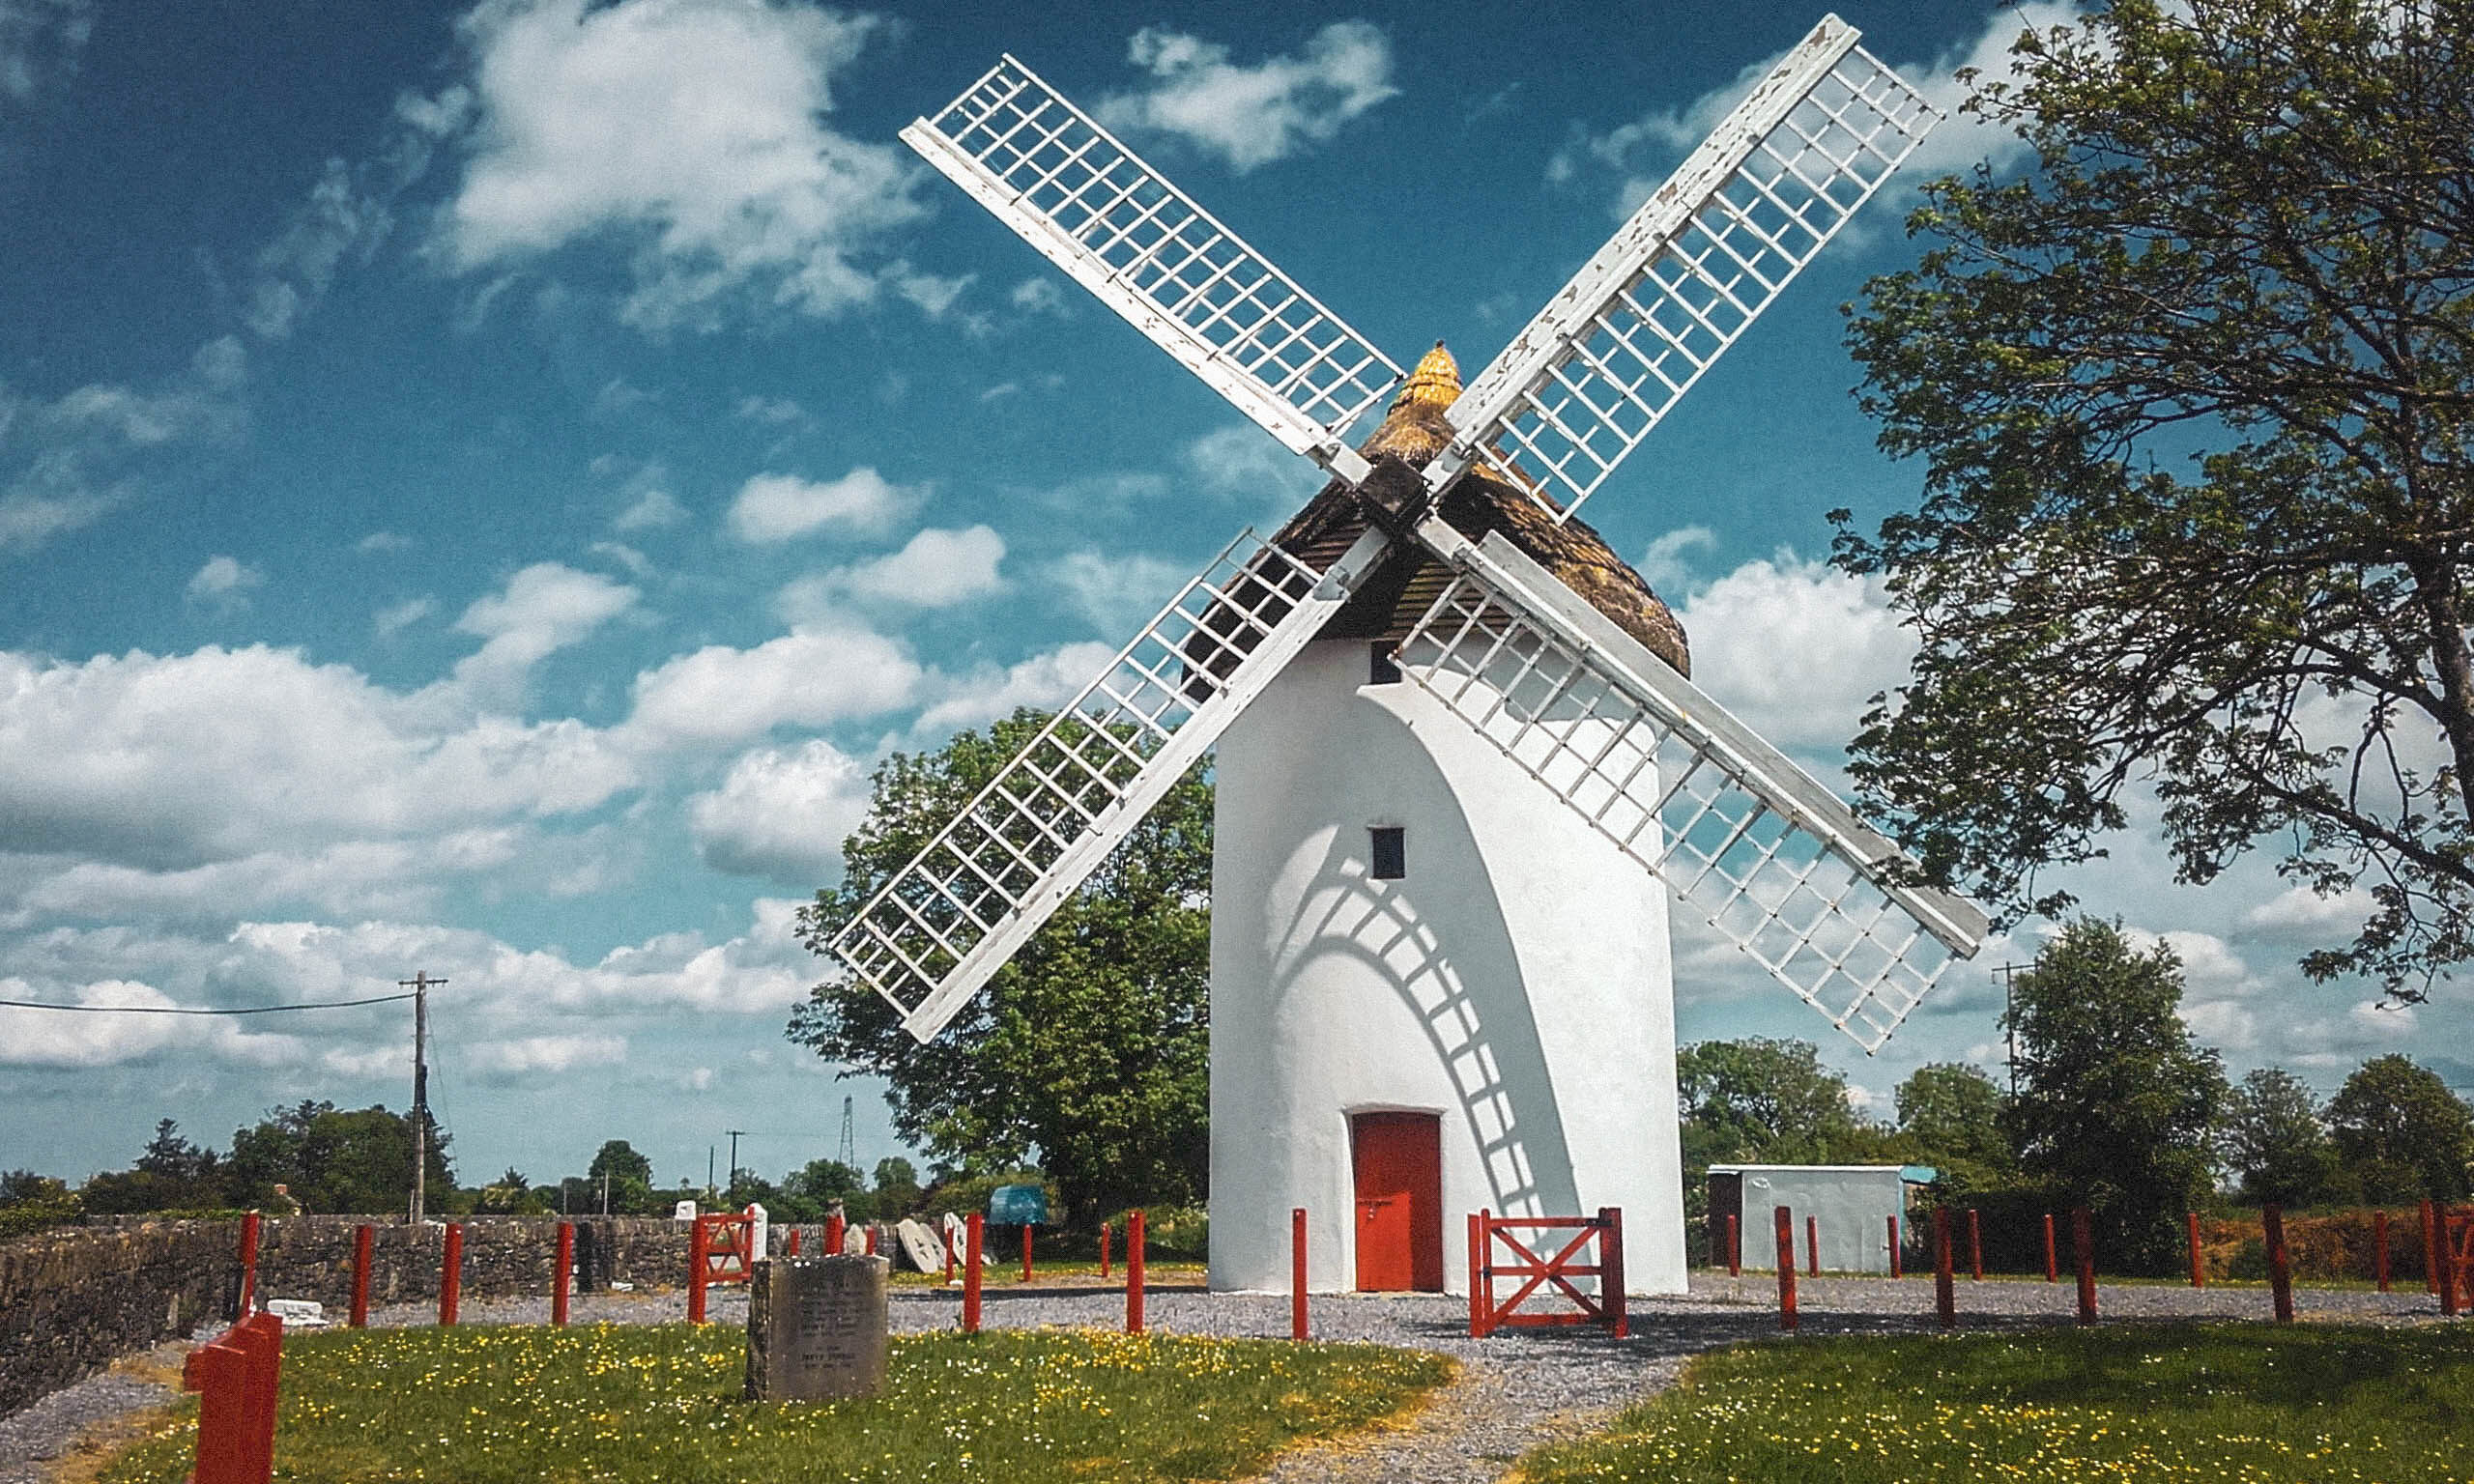 Elphin Windmill photo